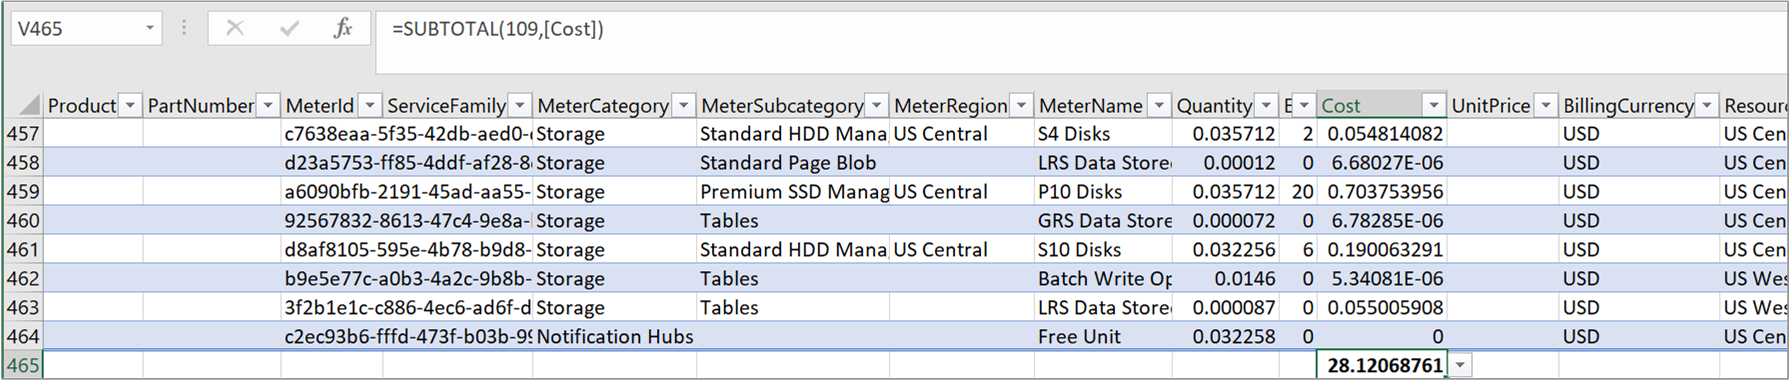 Capture d’écran montrant un exemple de fichier d’utilisation CSV avec un coût total.